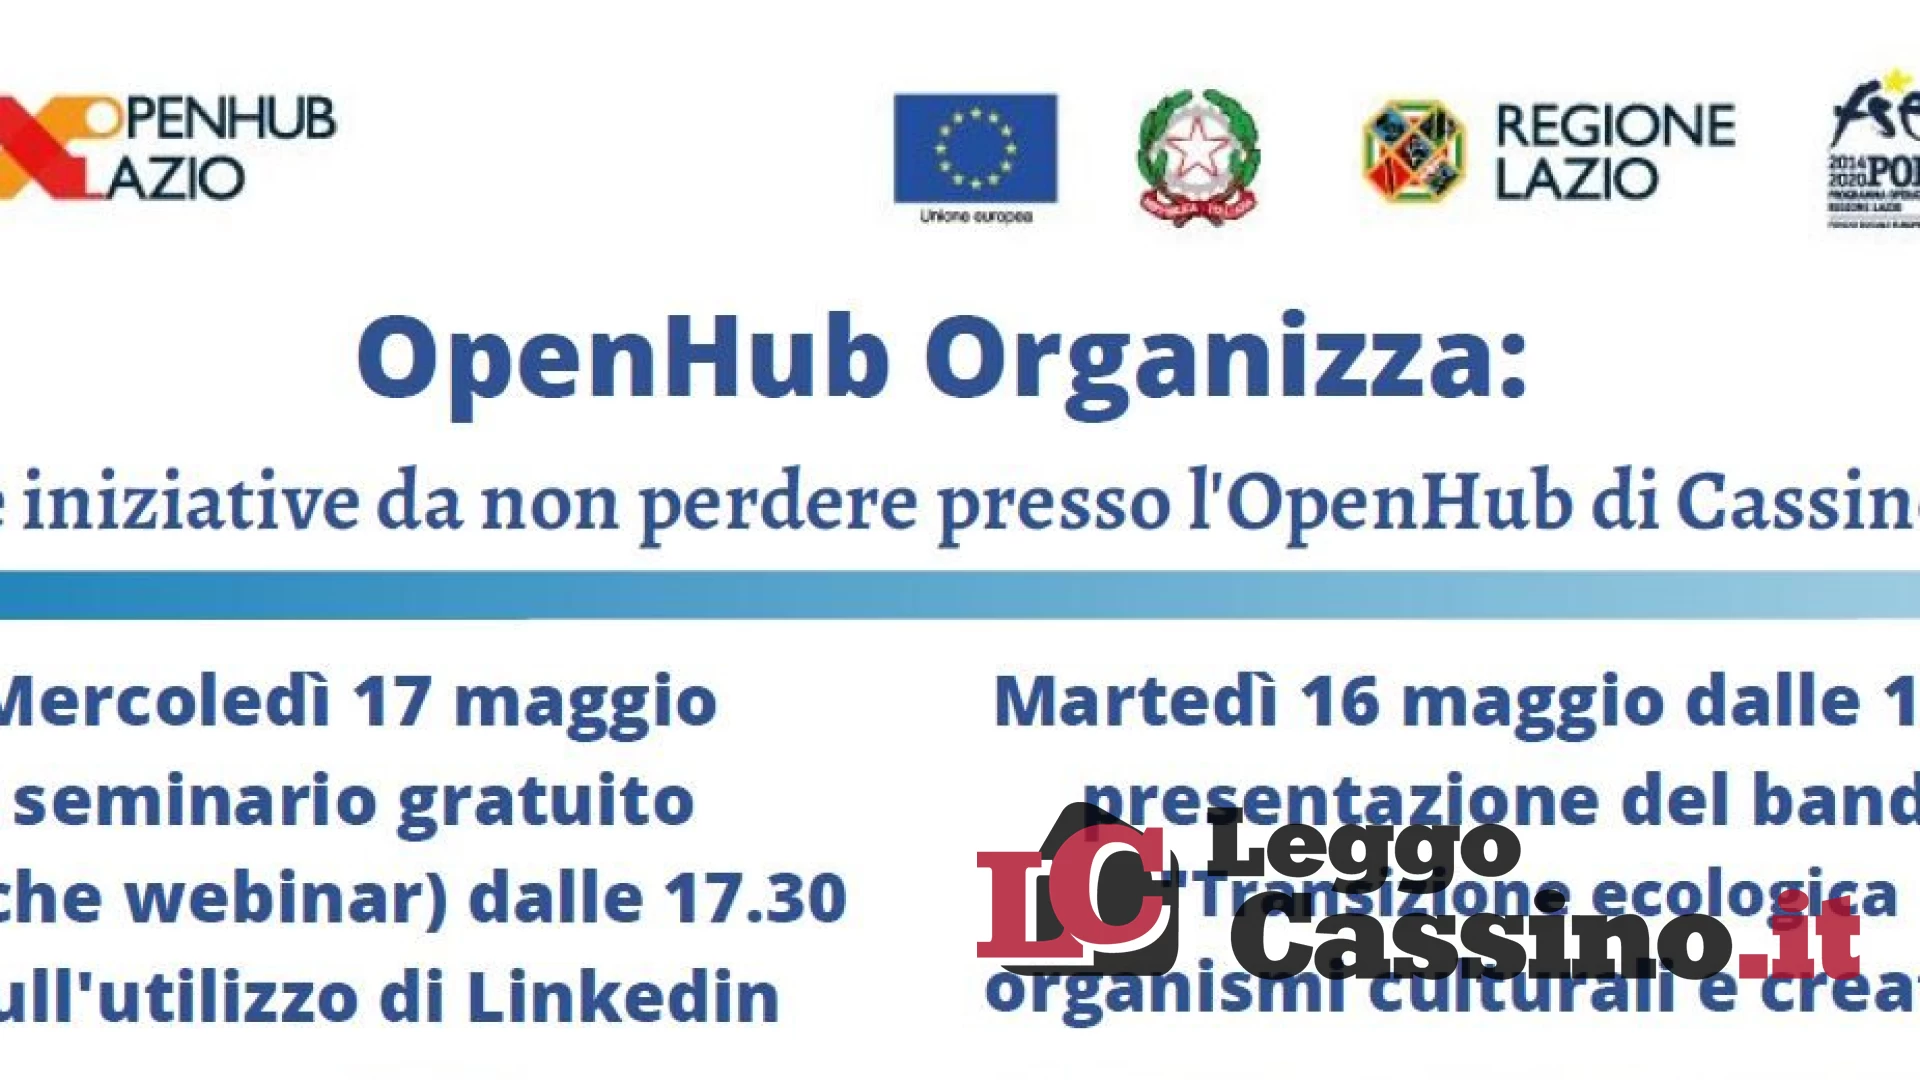 OpenHub Lazio organizza due iniziative da non perdere